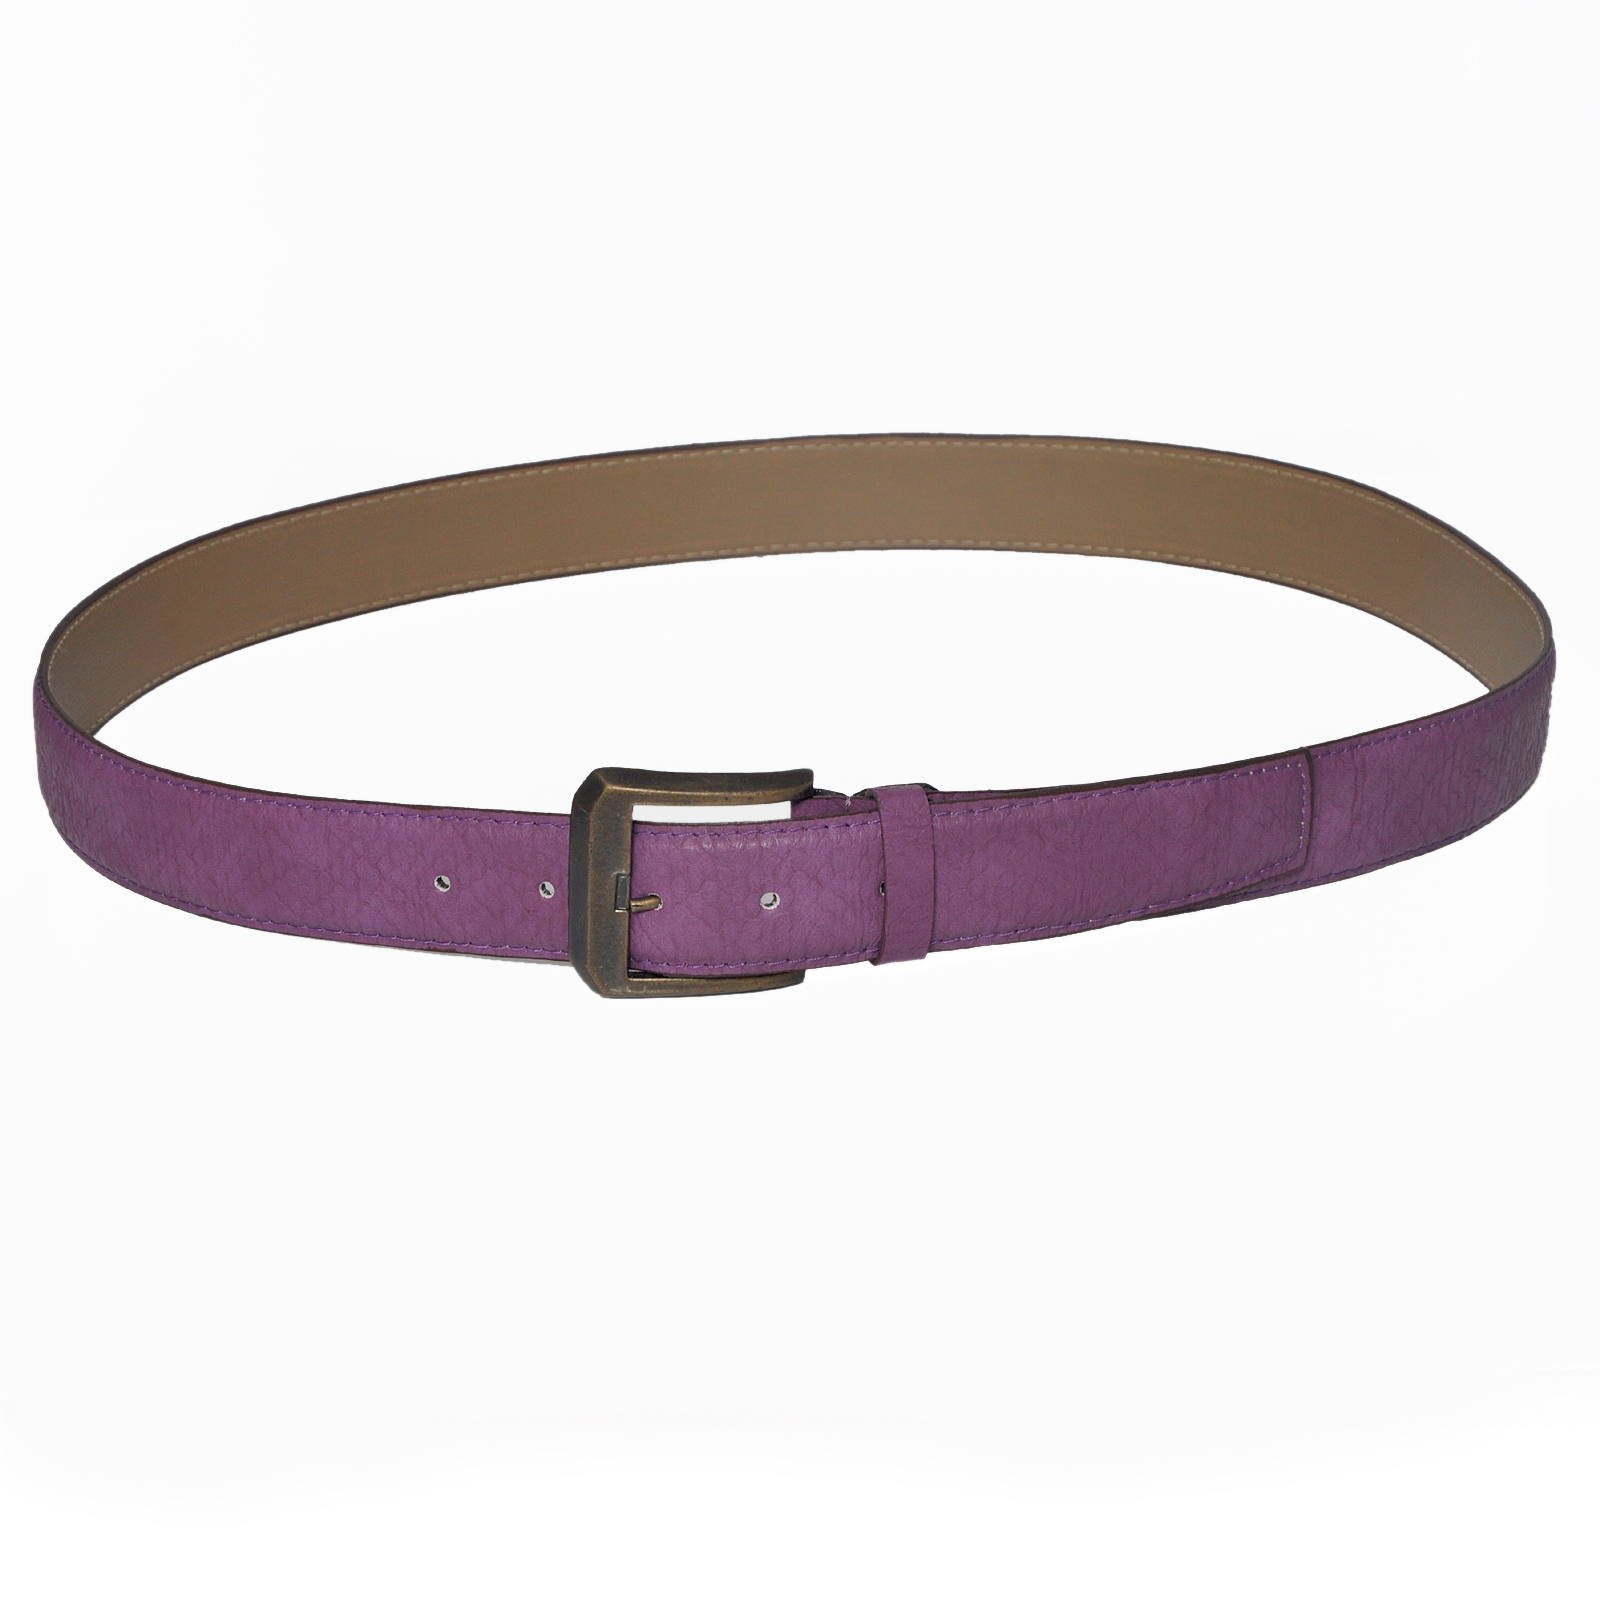 Buy Stylox Purple Belt [STX240 Online @ ₹299 from ShopClues